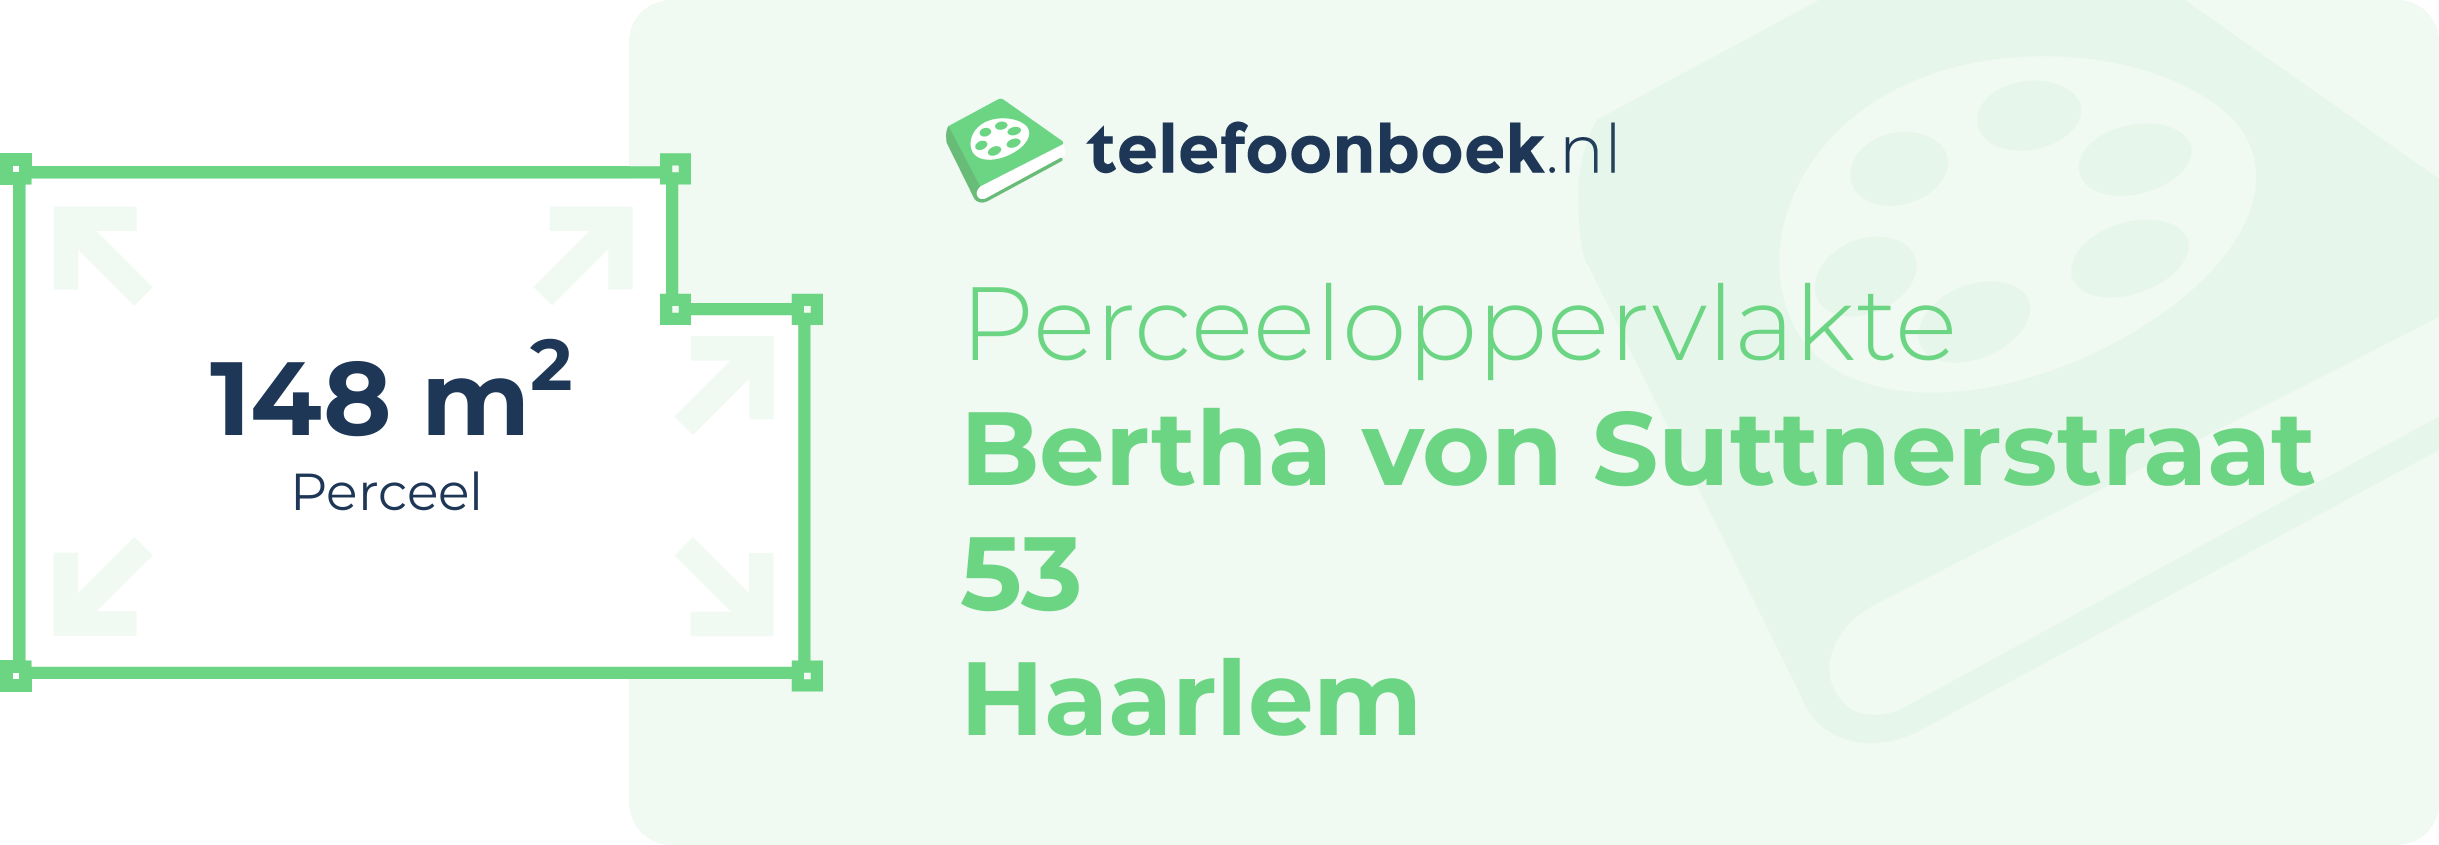 Perceeloppervlakte Bertha Von Suttnerstraat 53 Haarlem